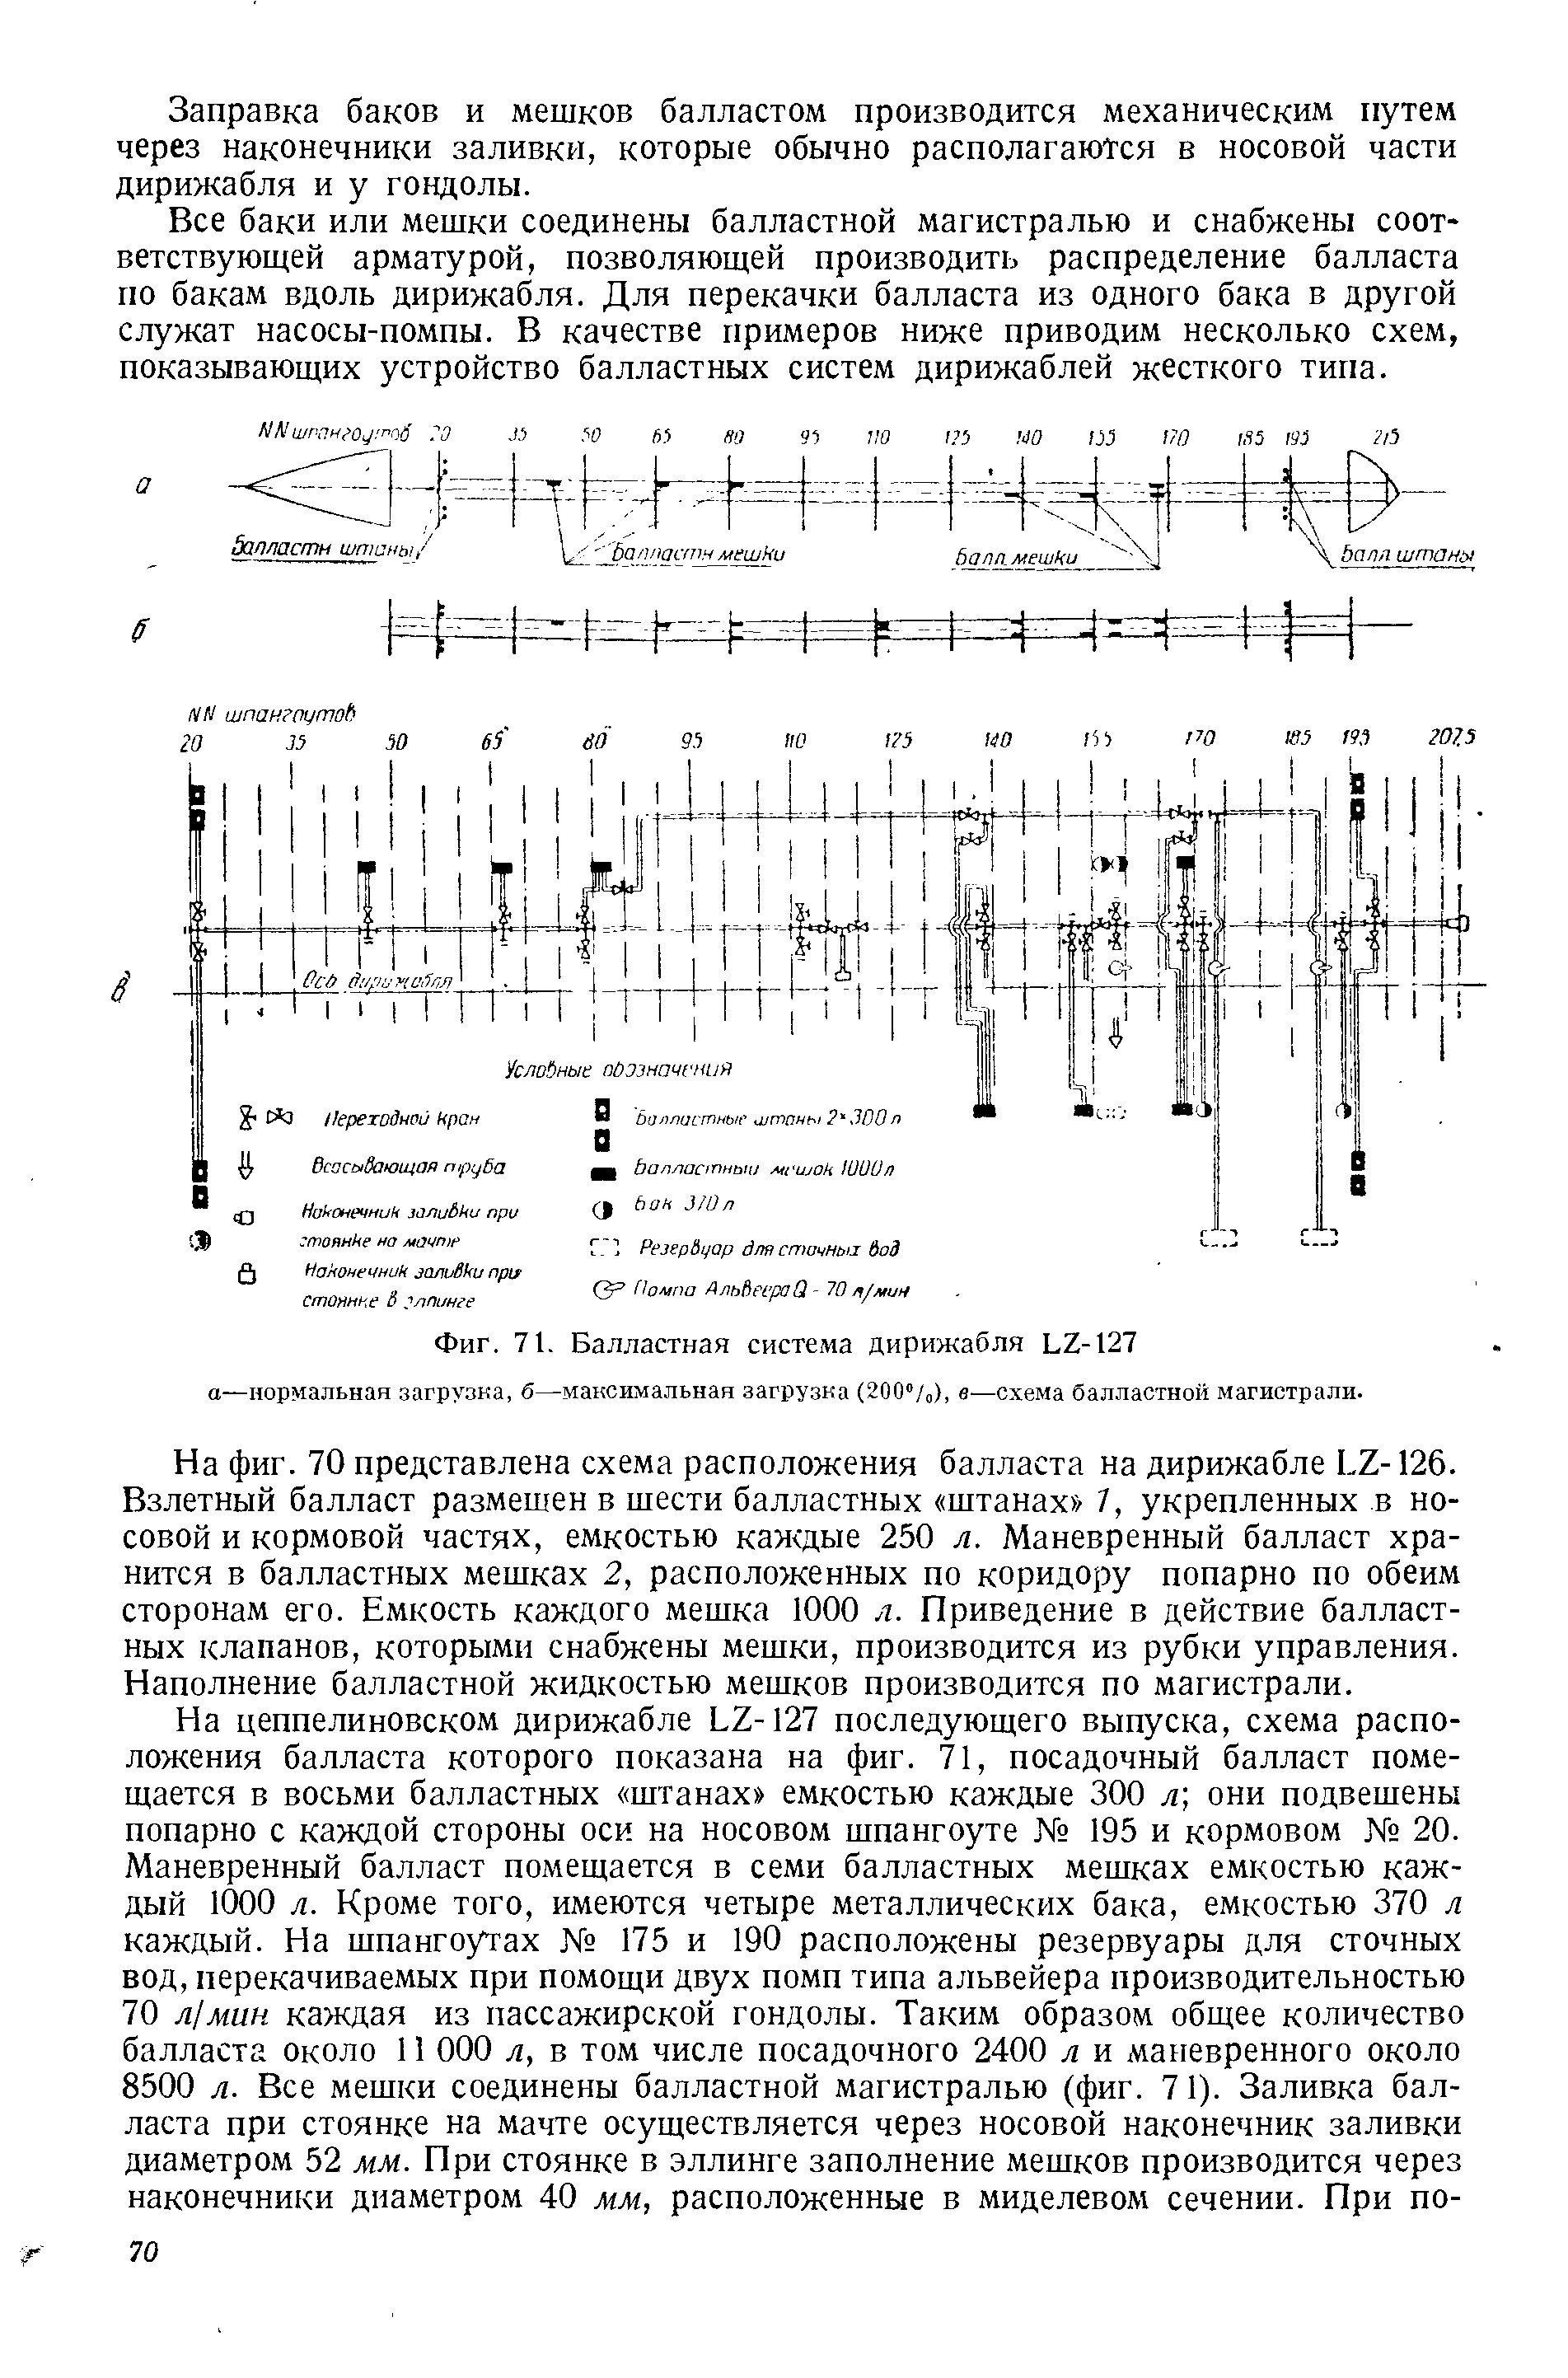 Фиг. 71. Балластная система дирижабля Ь2-127 а—нормальная загрузка, б—максимальная загрузка (200"/ ), в—схема балластной магистрали.
